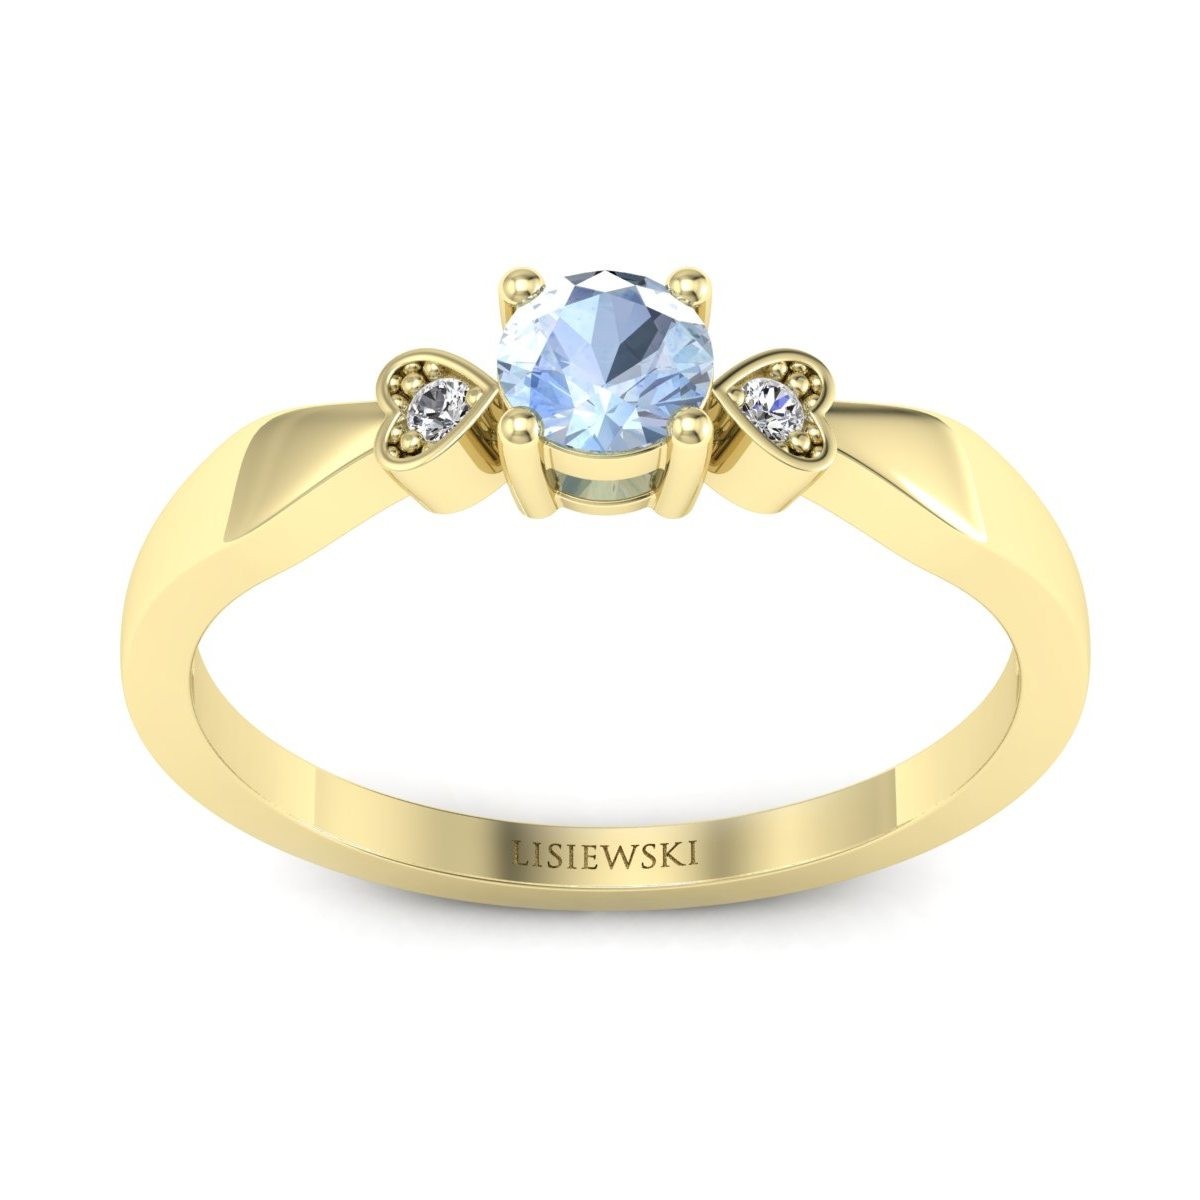 Two hearts - Złoty pierścionek z akwamarynem i diamentami